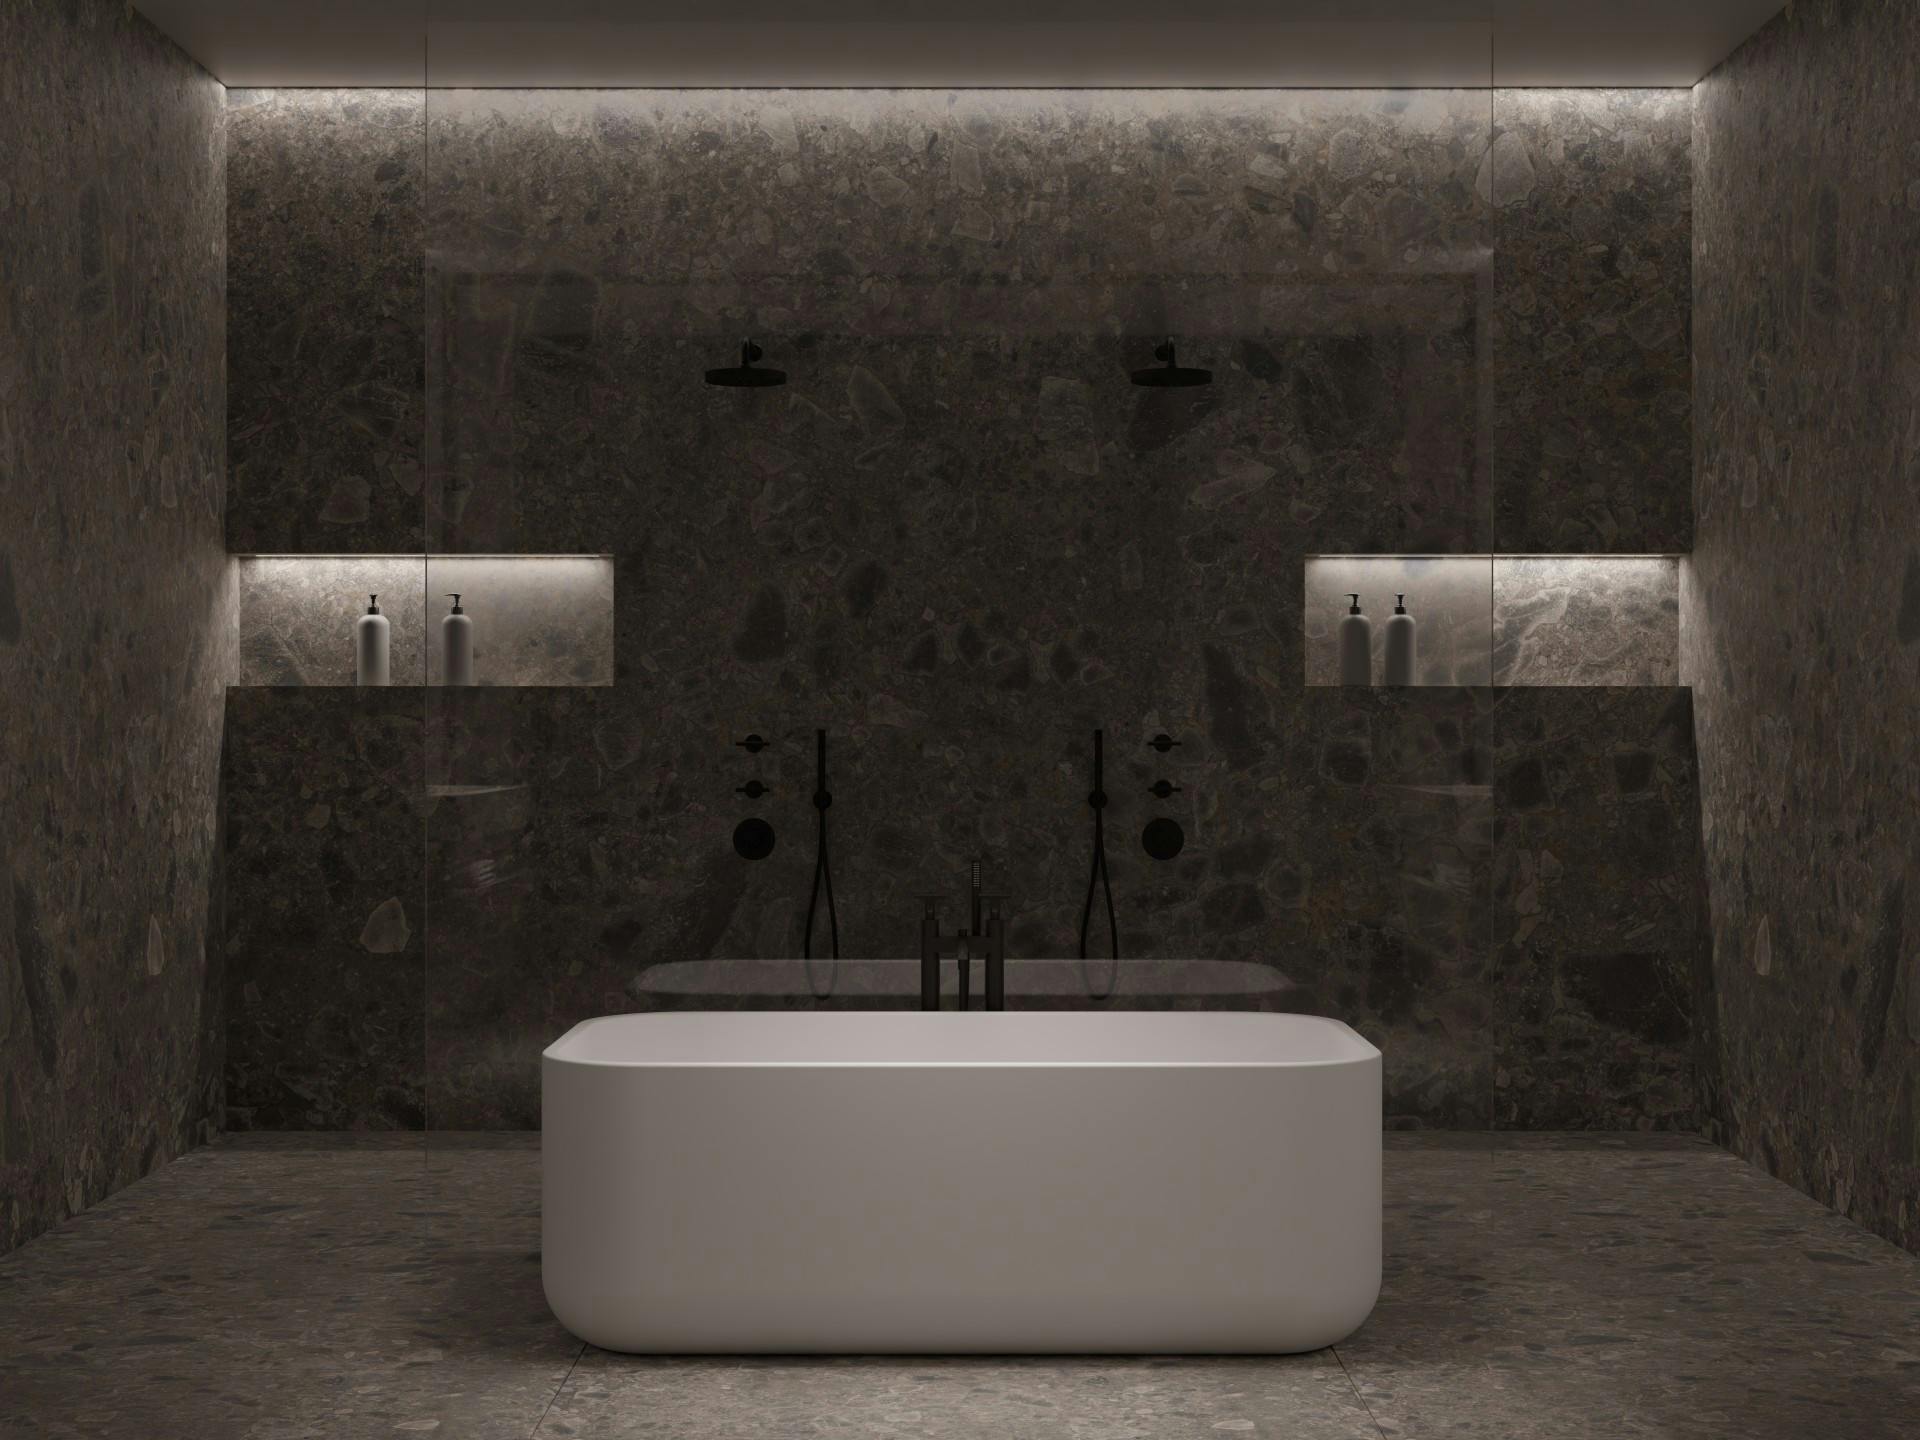 Numero immagine 44 della sezione corrente di 'Space for two', a bathroom meticulously designed by Marisa Gallo di Cosentino Italia